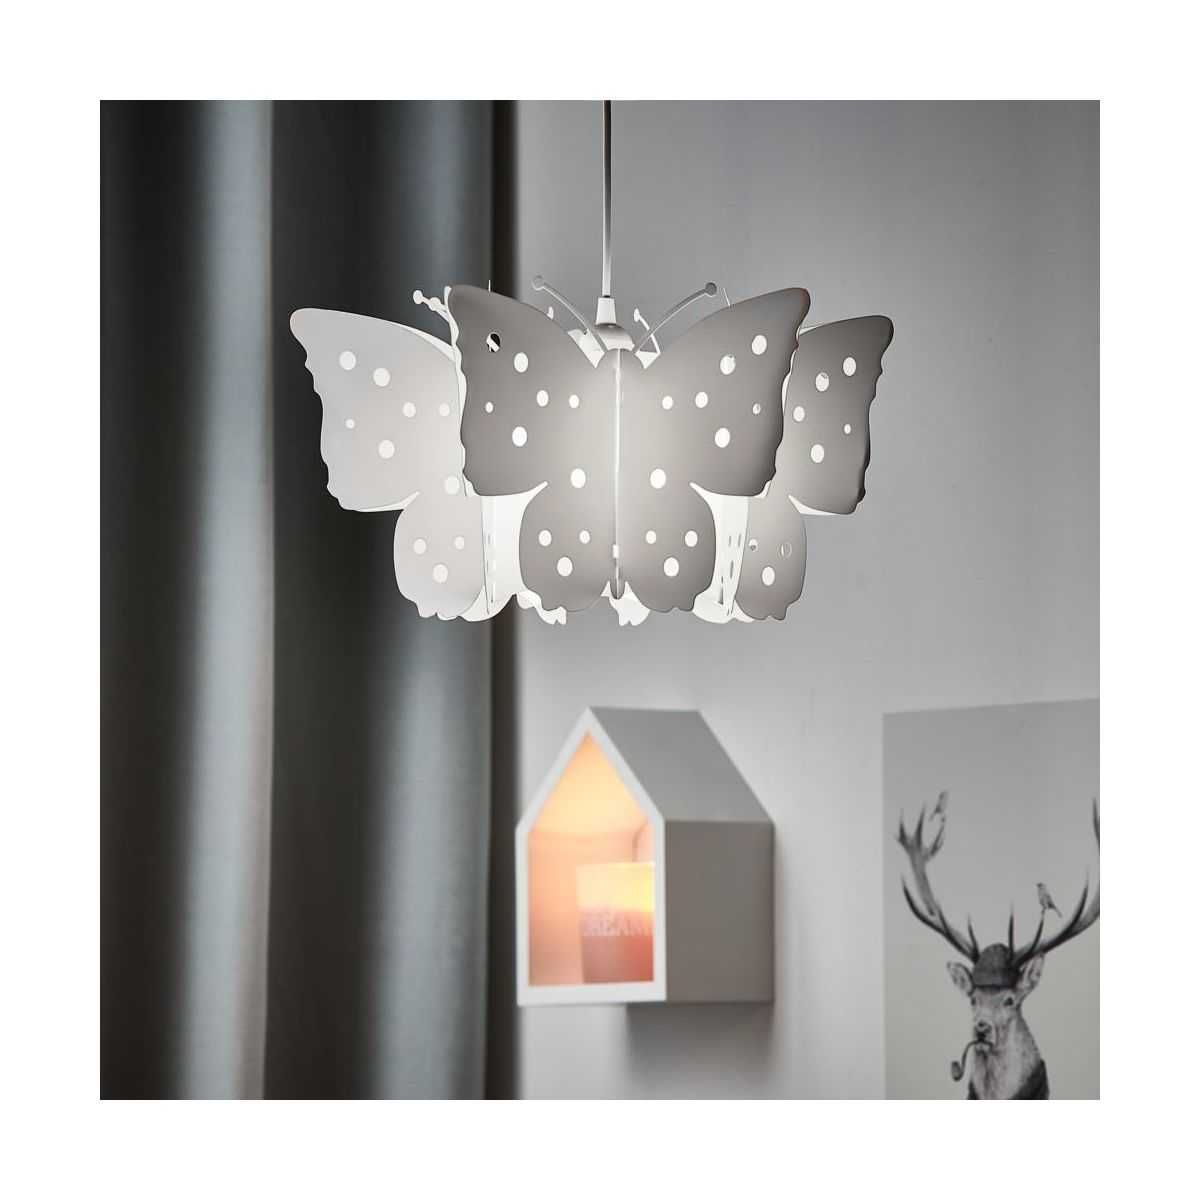 Lampa wisząca Motyl - Oriva, do pokoju dziecięcego, żarówka LED gratis